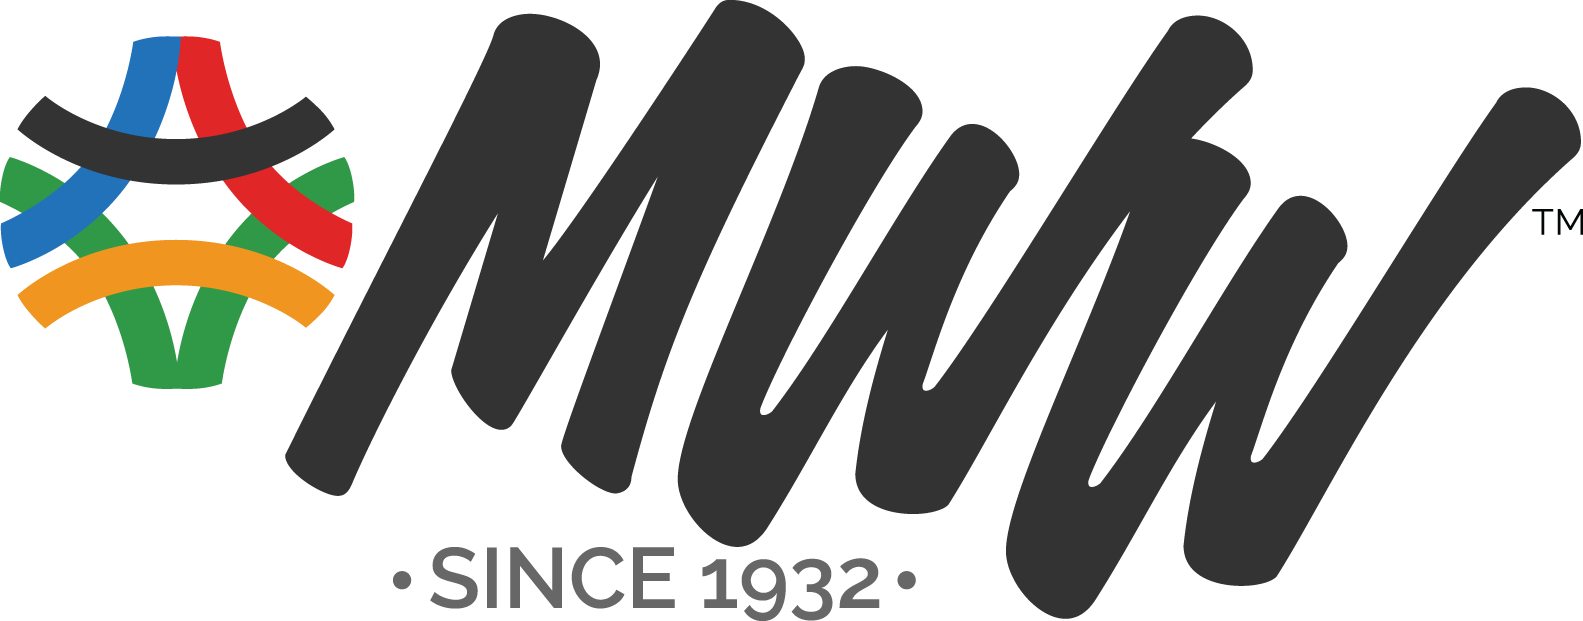 MWW inc logo